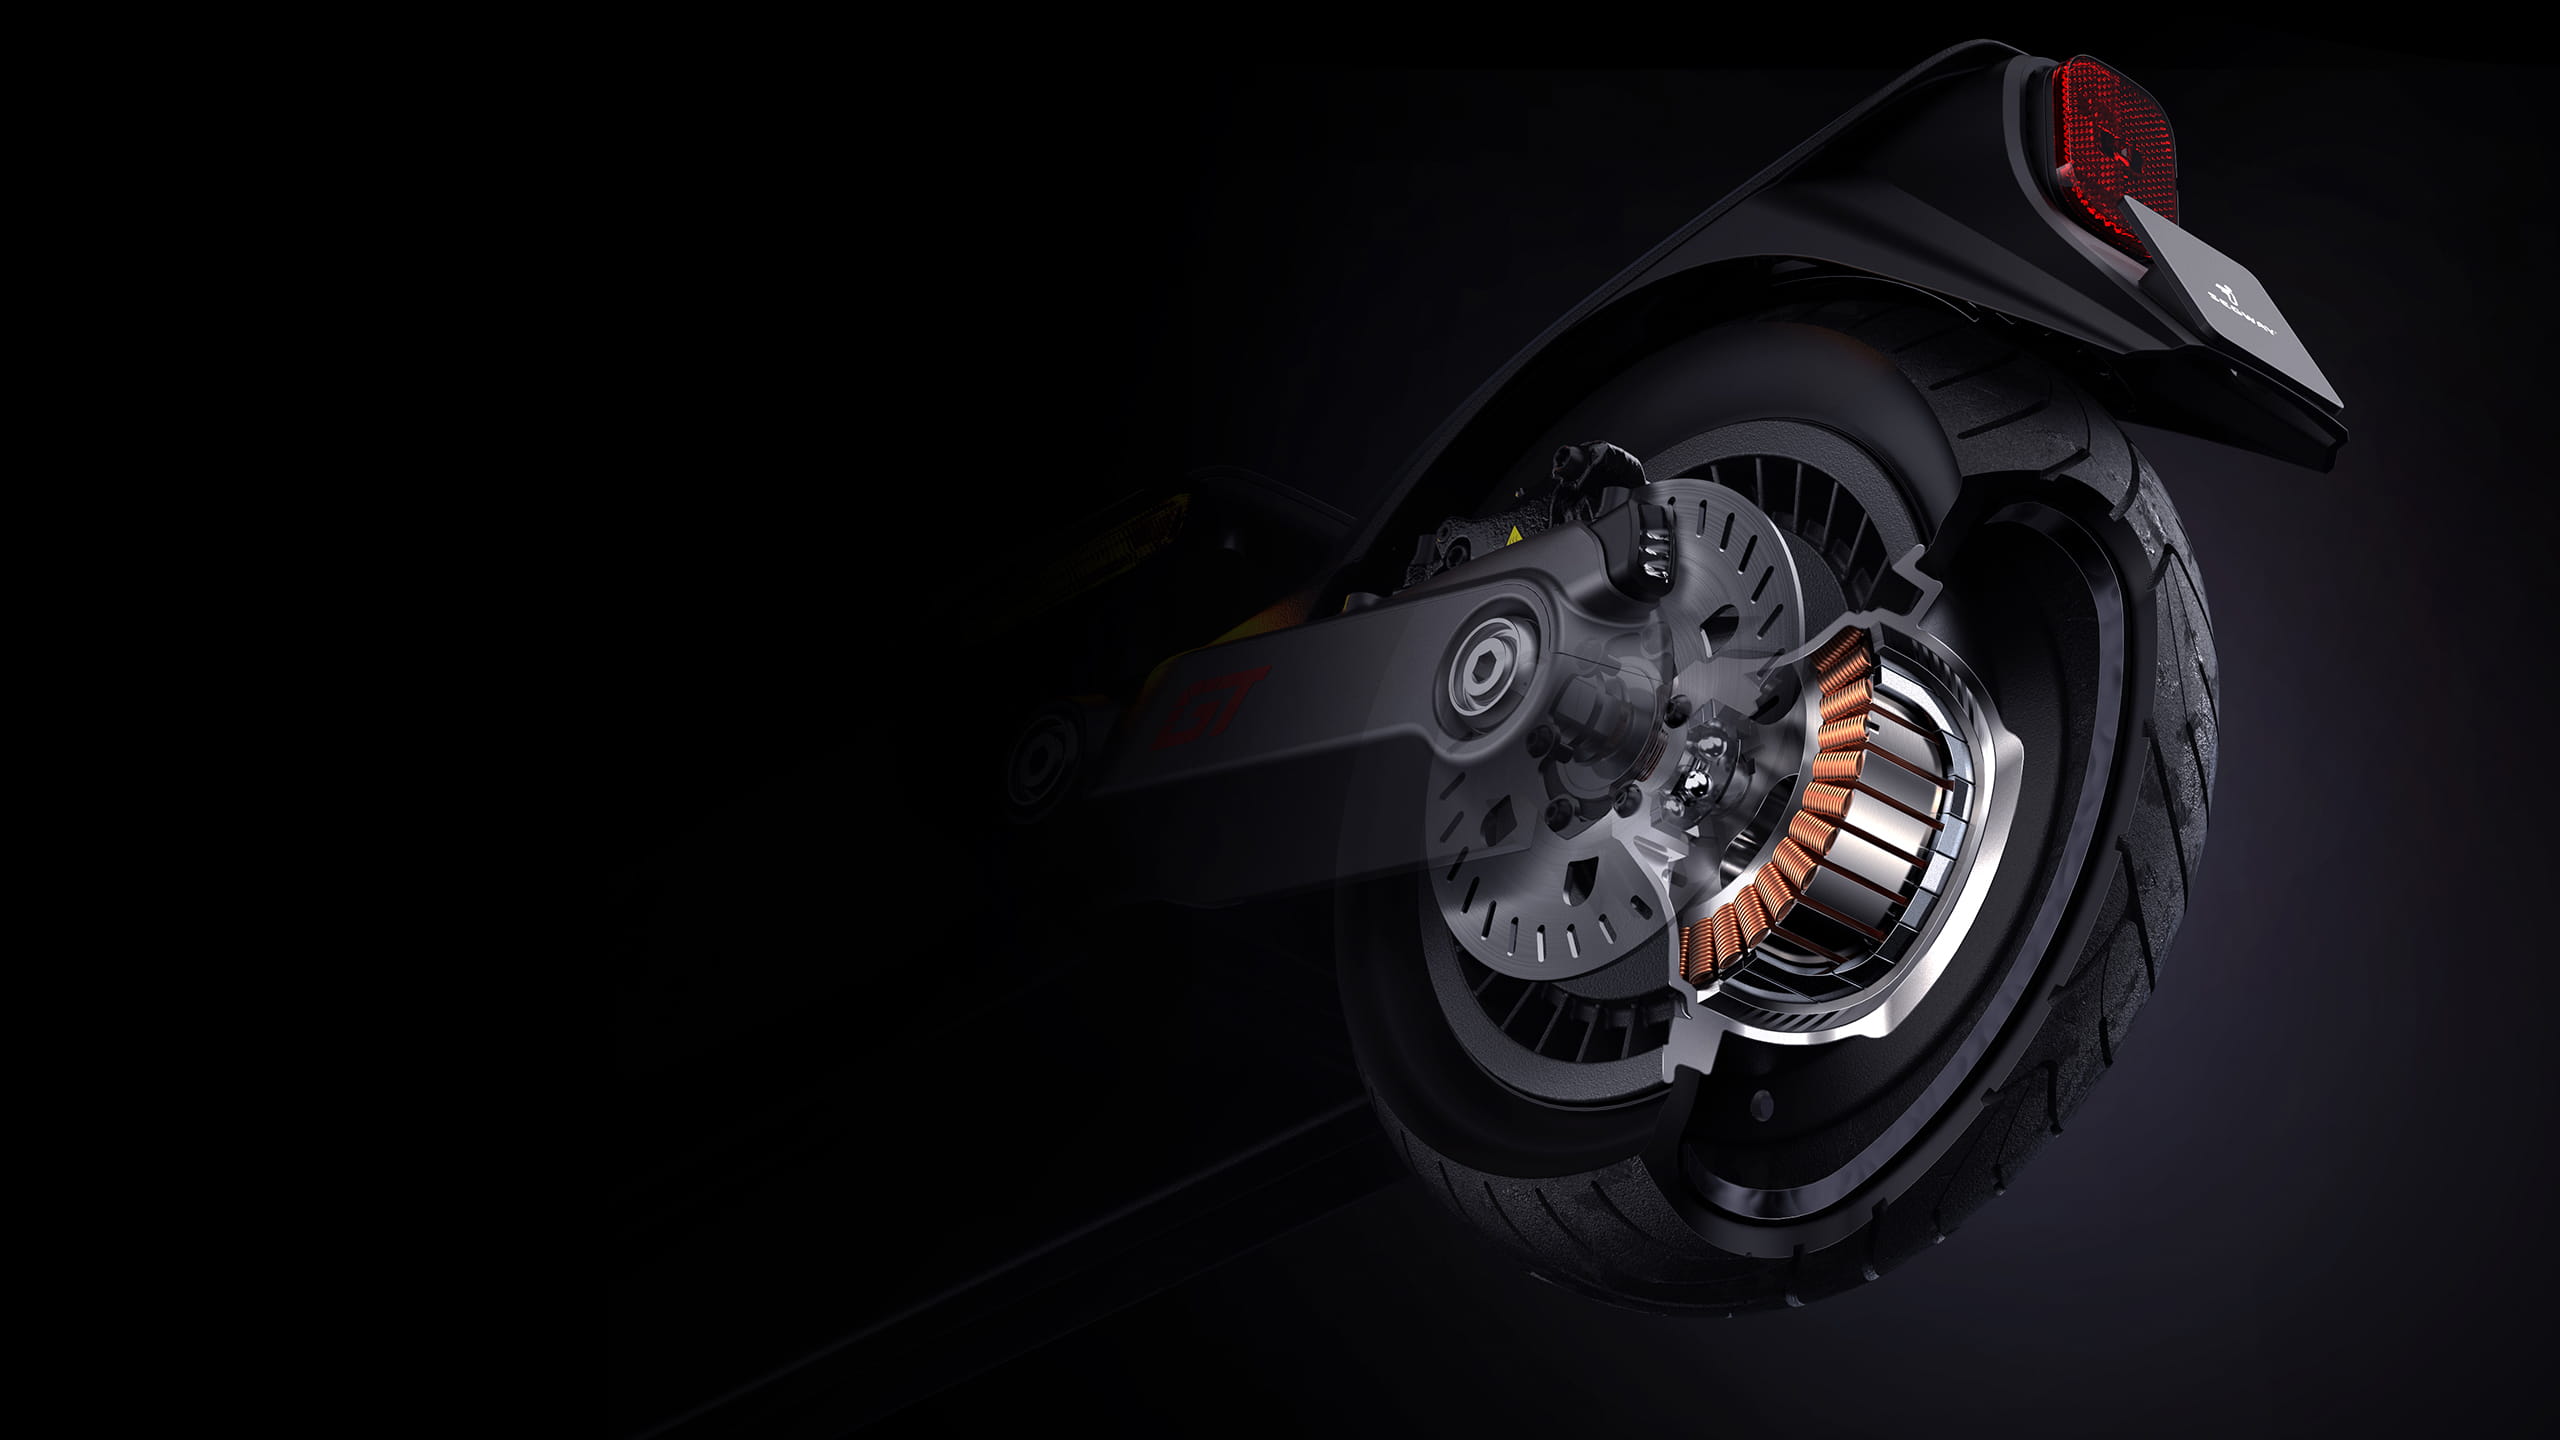 Мотор гоночного электросамоката Ninebot GT1 обеспечивает максимальную скорость до 60 км\ч